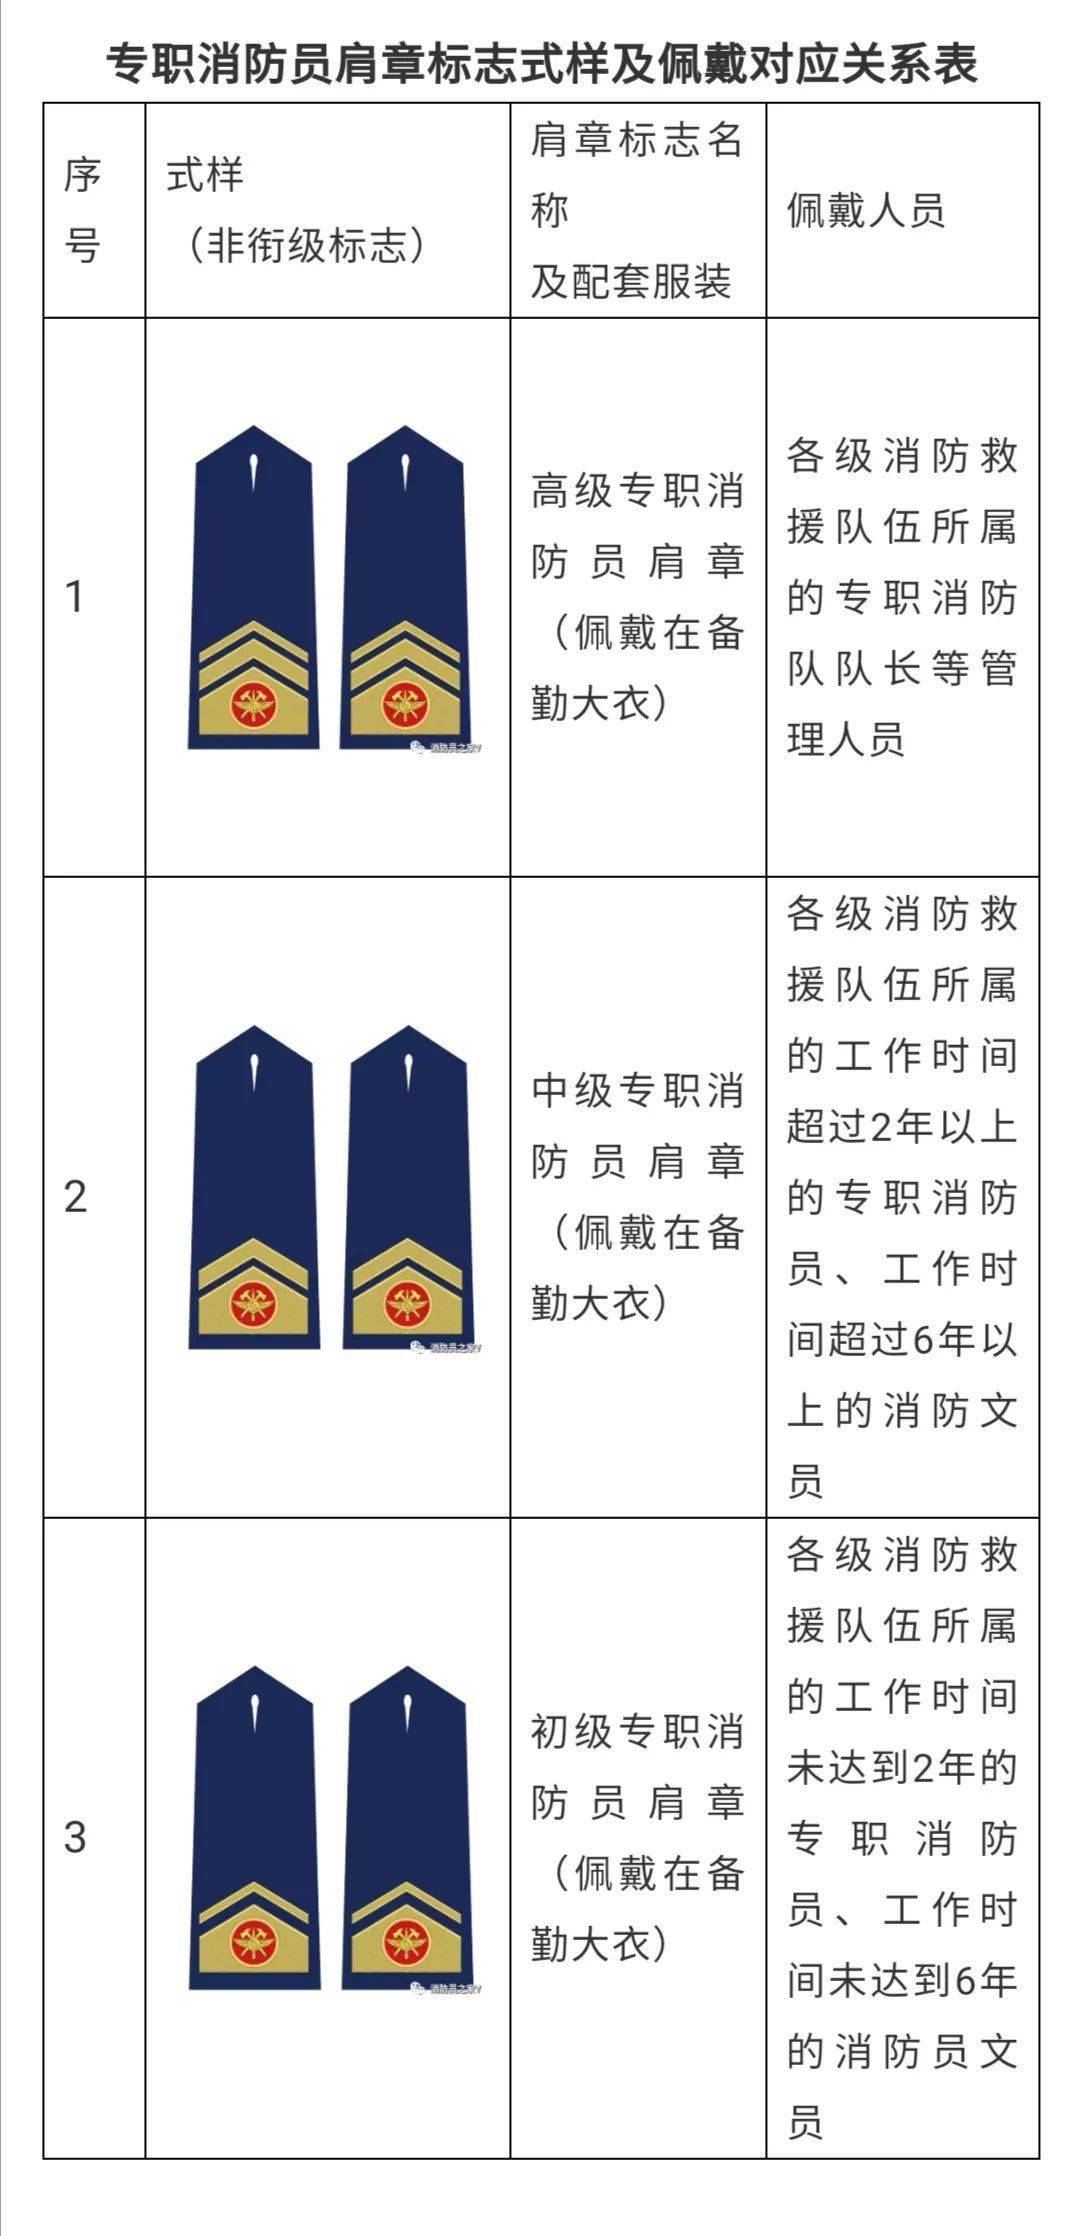 (二)专职消防员肩章标志共3种,与专职消防员备勤大衣配套使用,专职